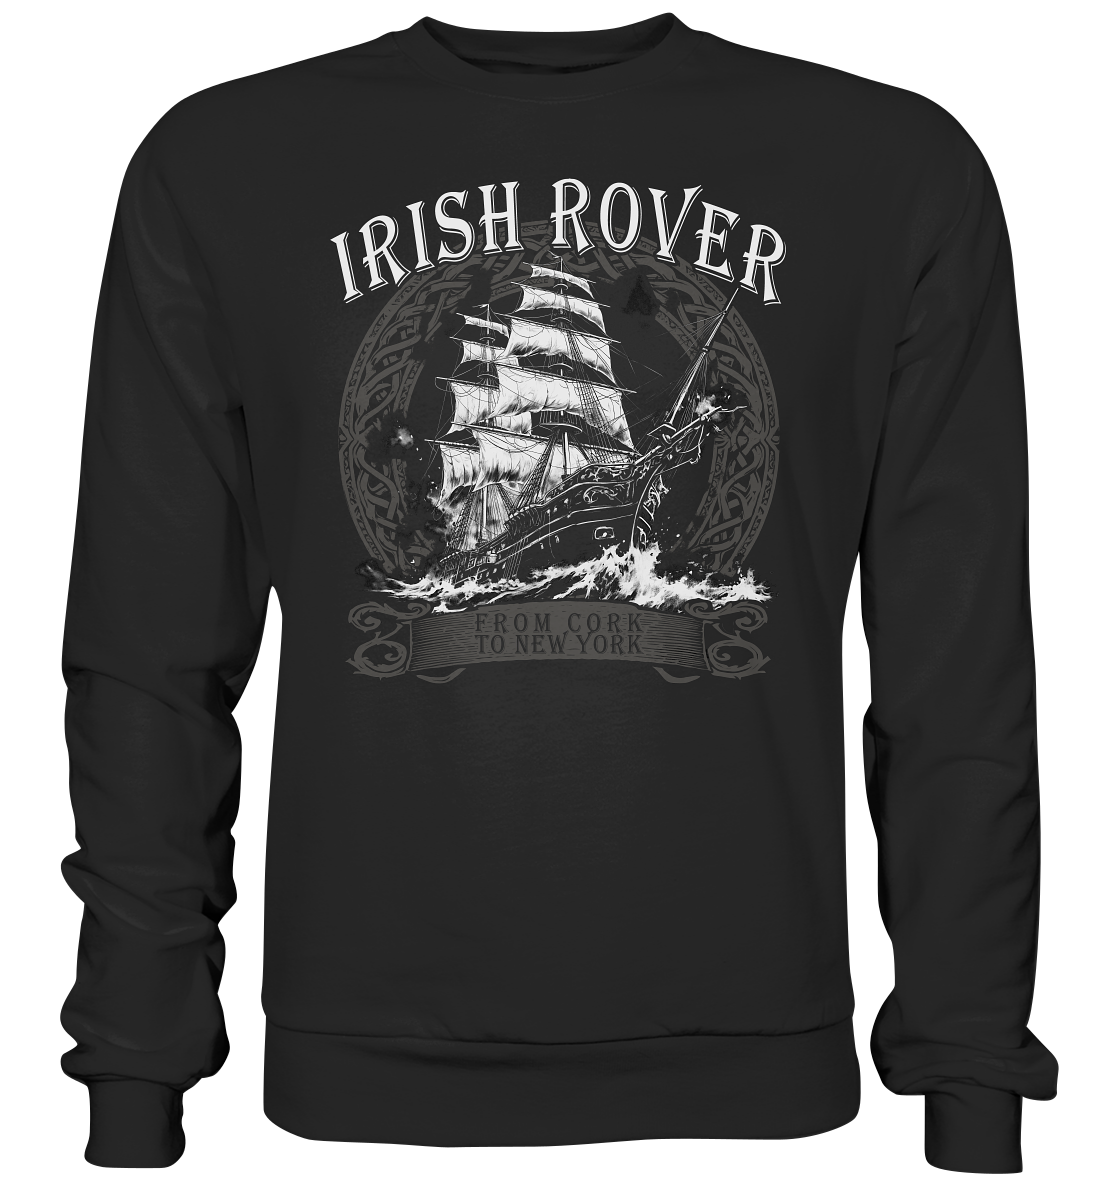 The Irish Rover "From Cork To New York" - Premium Sweatshirt